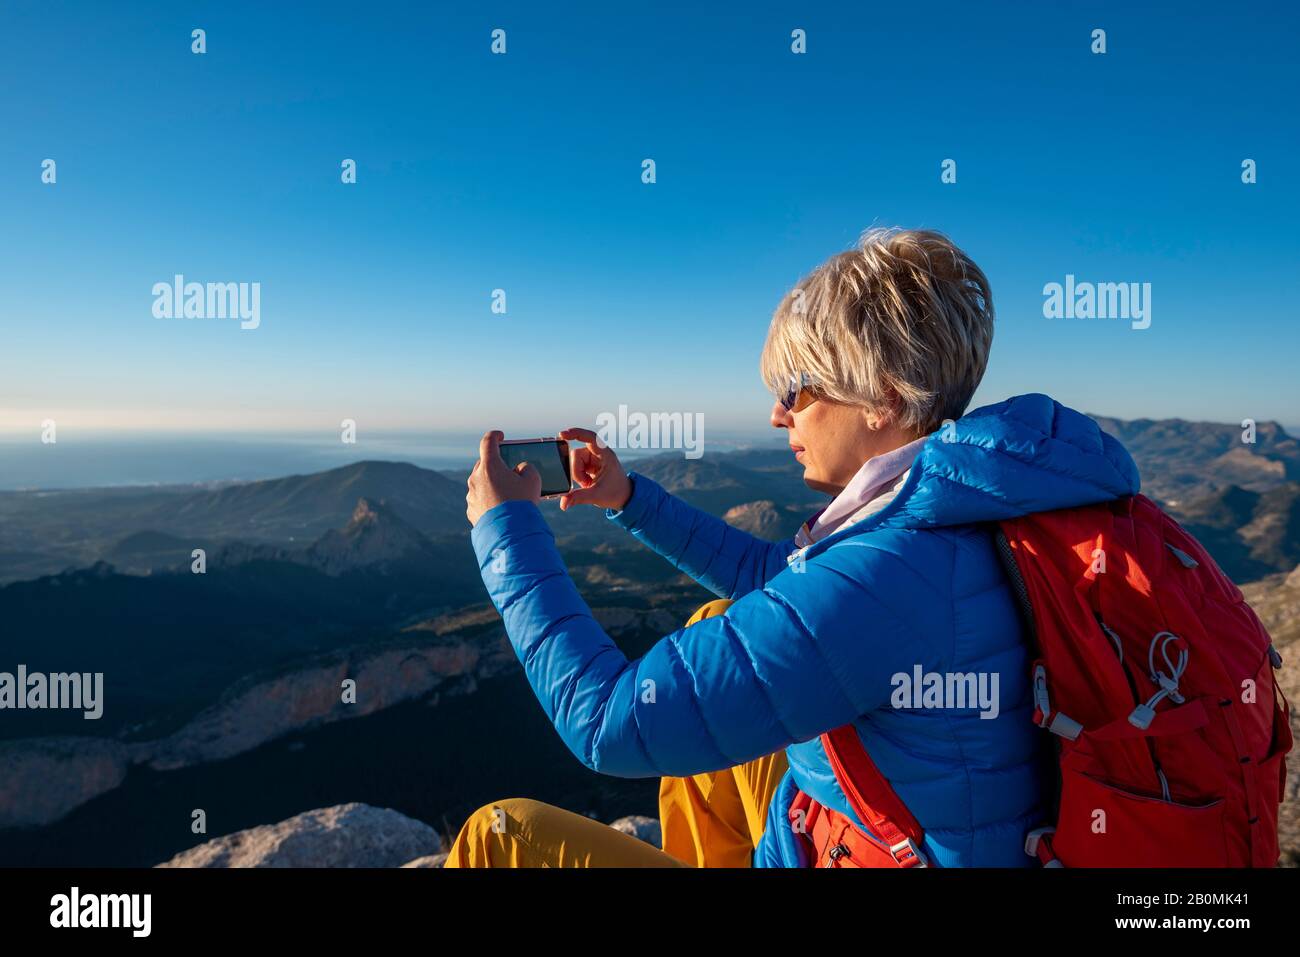 Jeune femme debout sur des rochers au sommet d'une montagne avec un téléphone portable. Banque D'Images